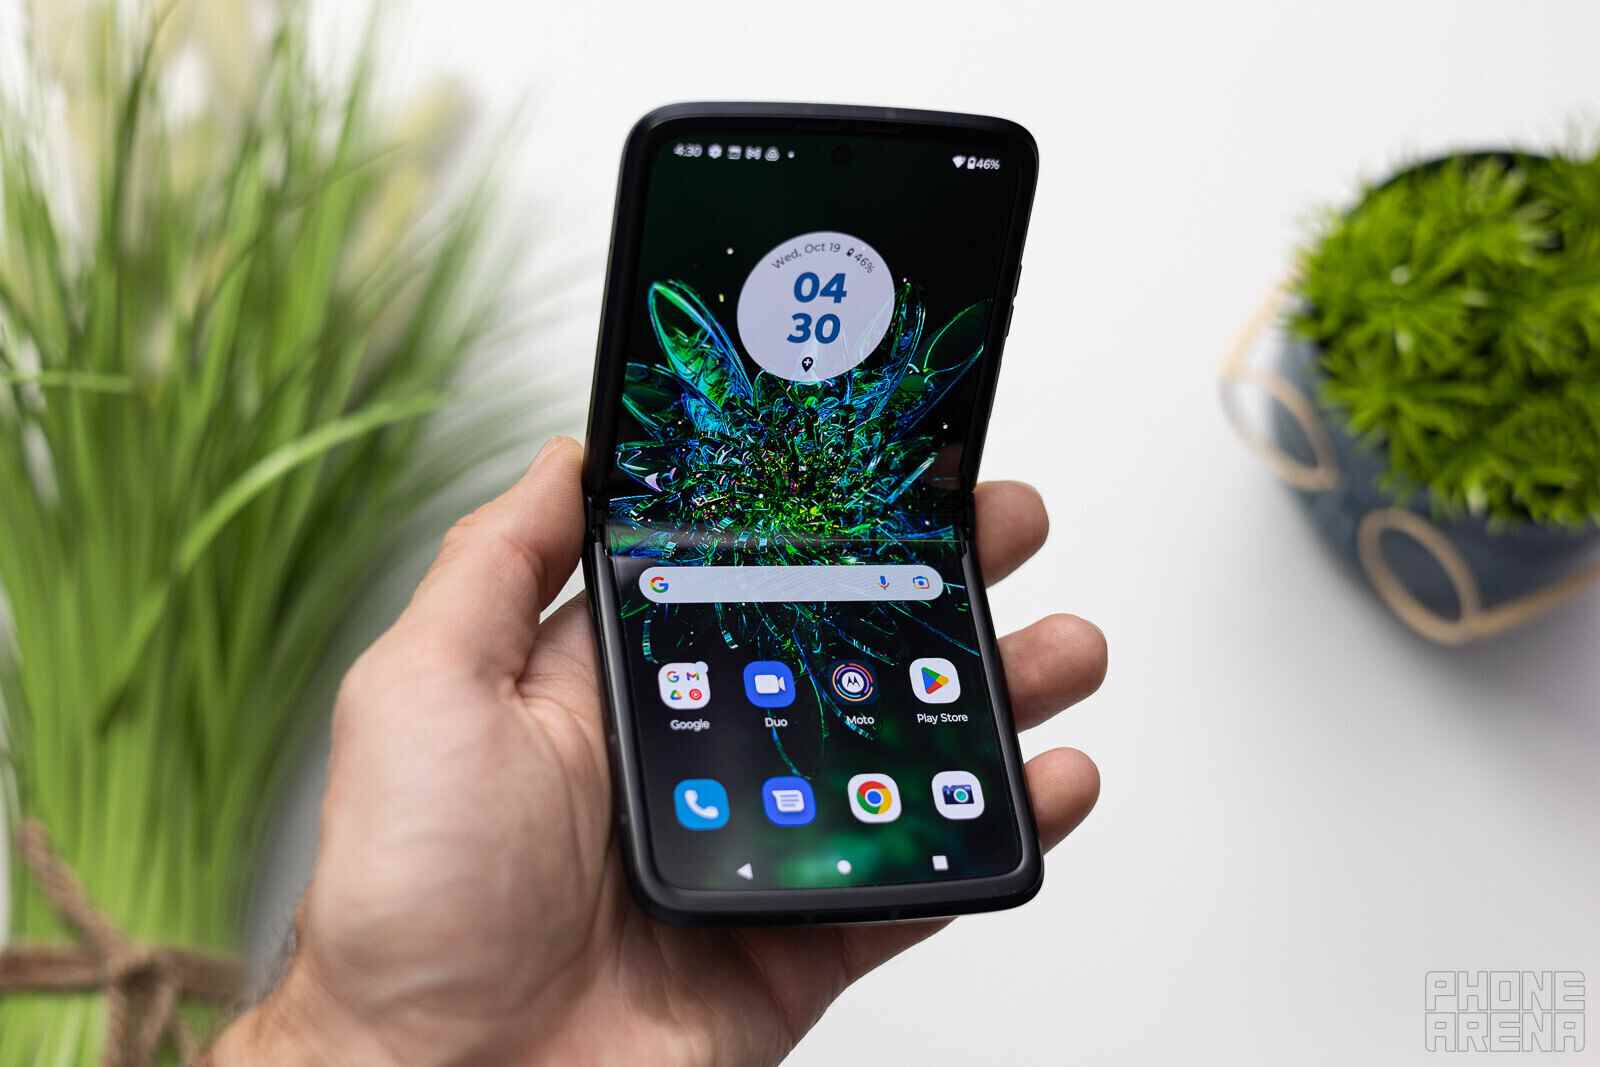 Das Motorola RAZR 2022 wurde der Liste der Motorola-Telefone hinzugefügt, die das Android 13-Update erhalten sollen – Motorola verdoppelt die Anzahl der Telefone, die es auf Android 13 aktualisieren wird